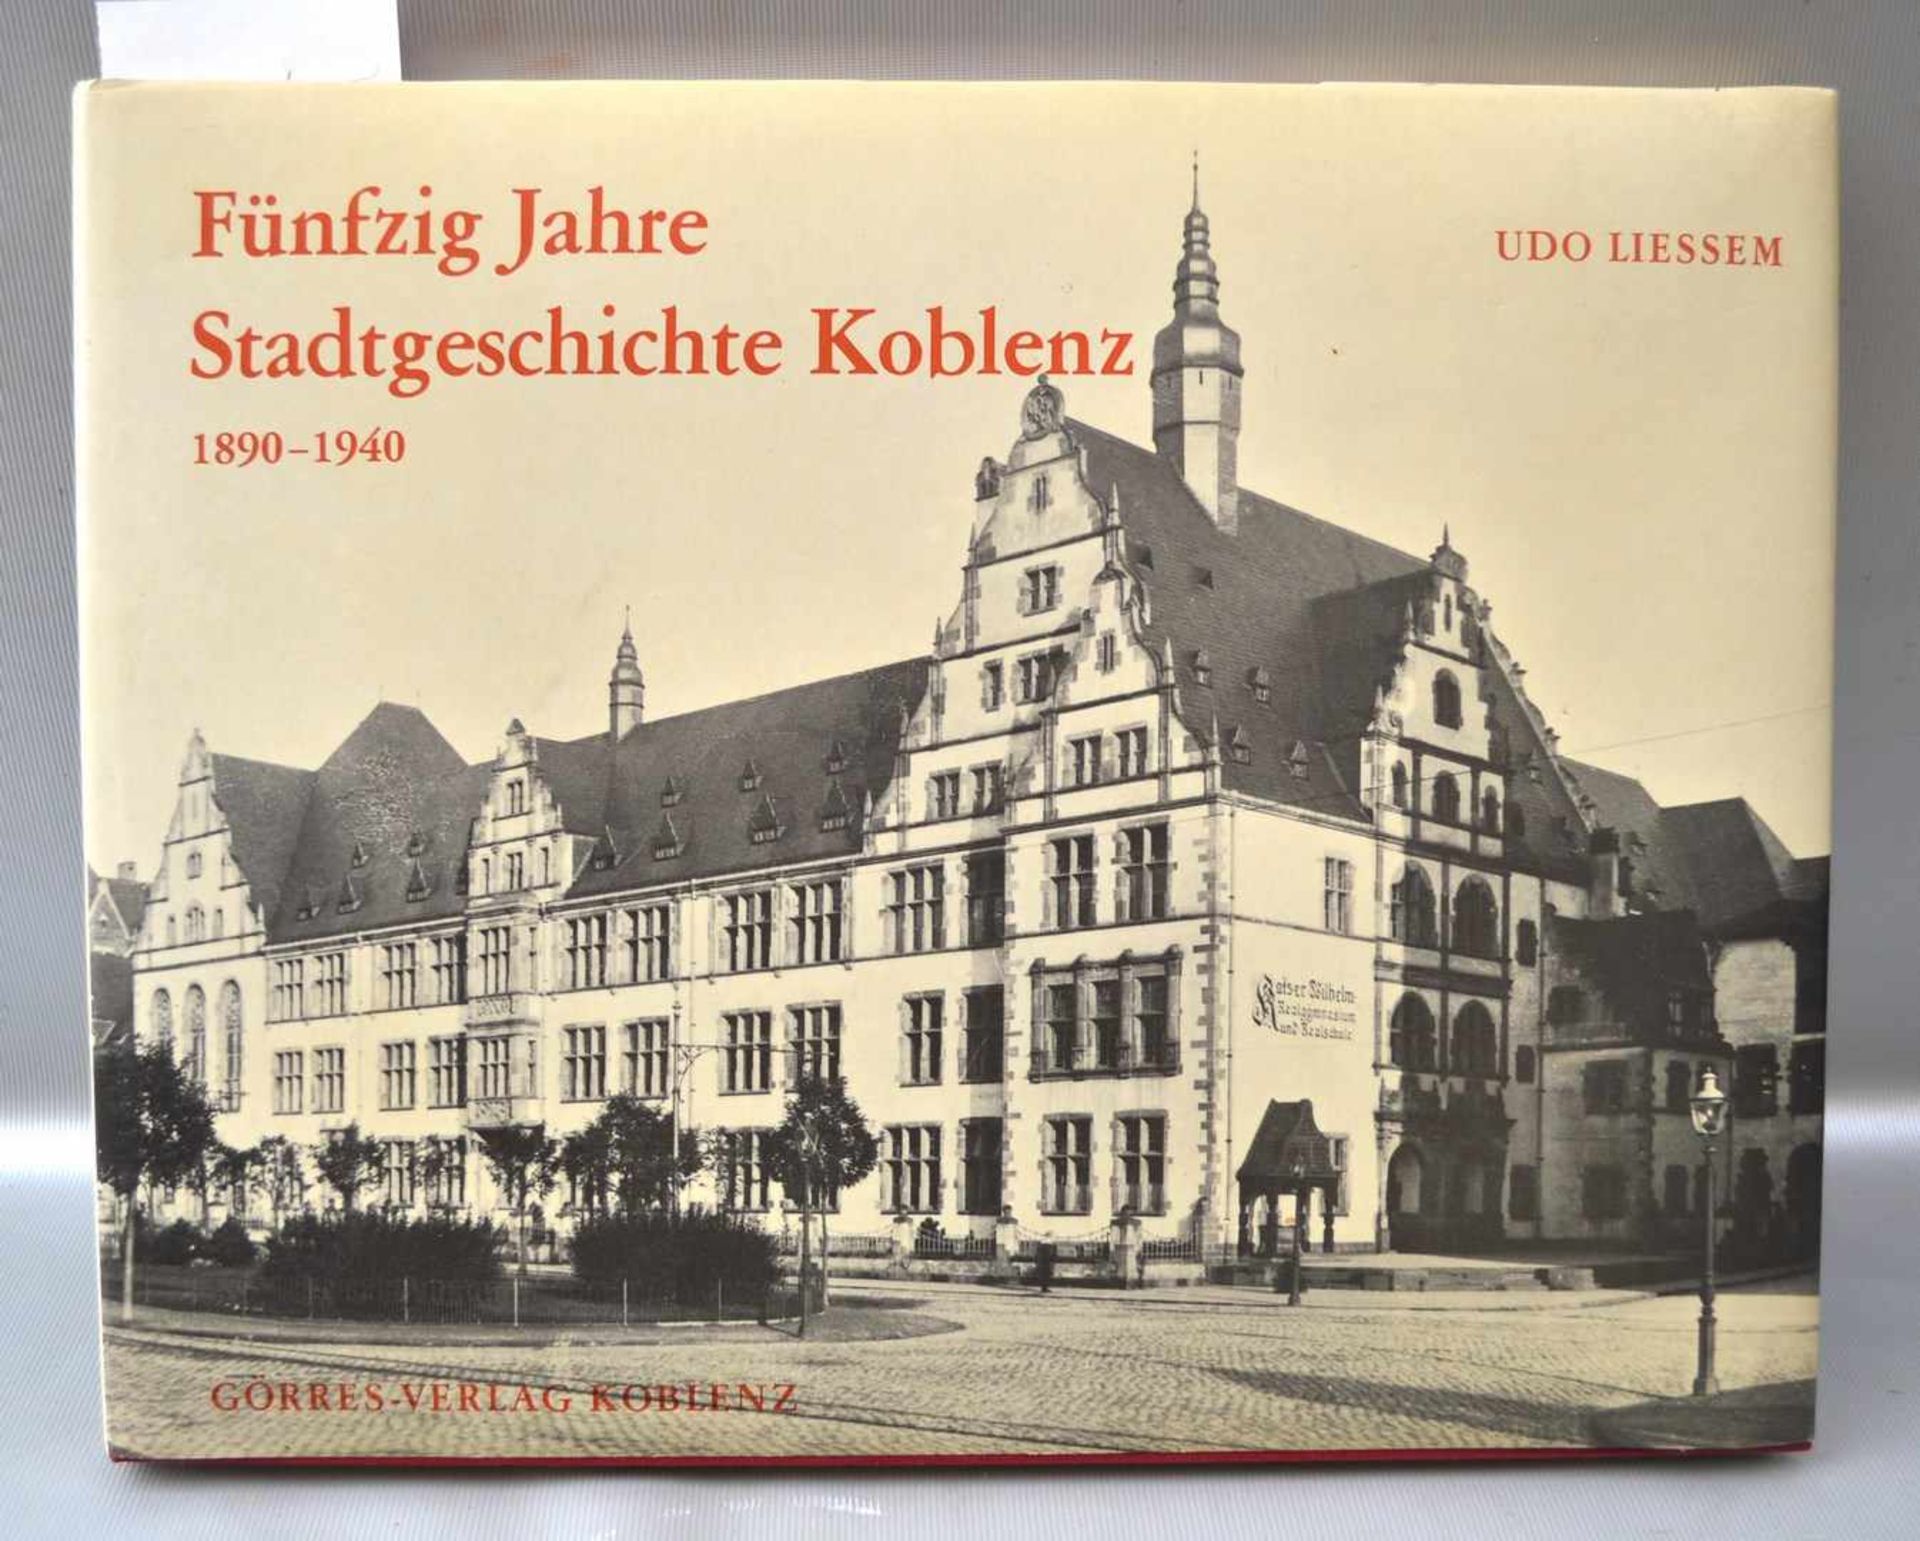 Fünfzig Jahre Stadtgeschichte Koblenz 1890-1940, von Udo Liessem